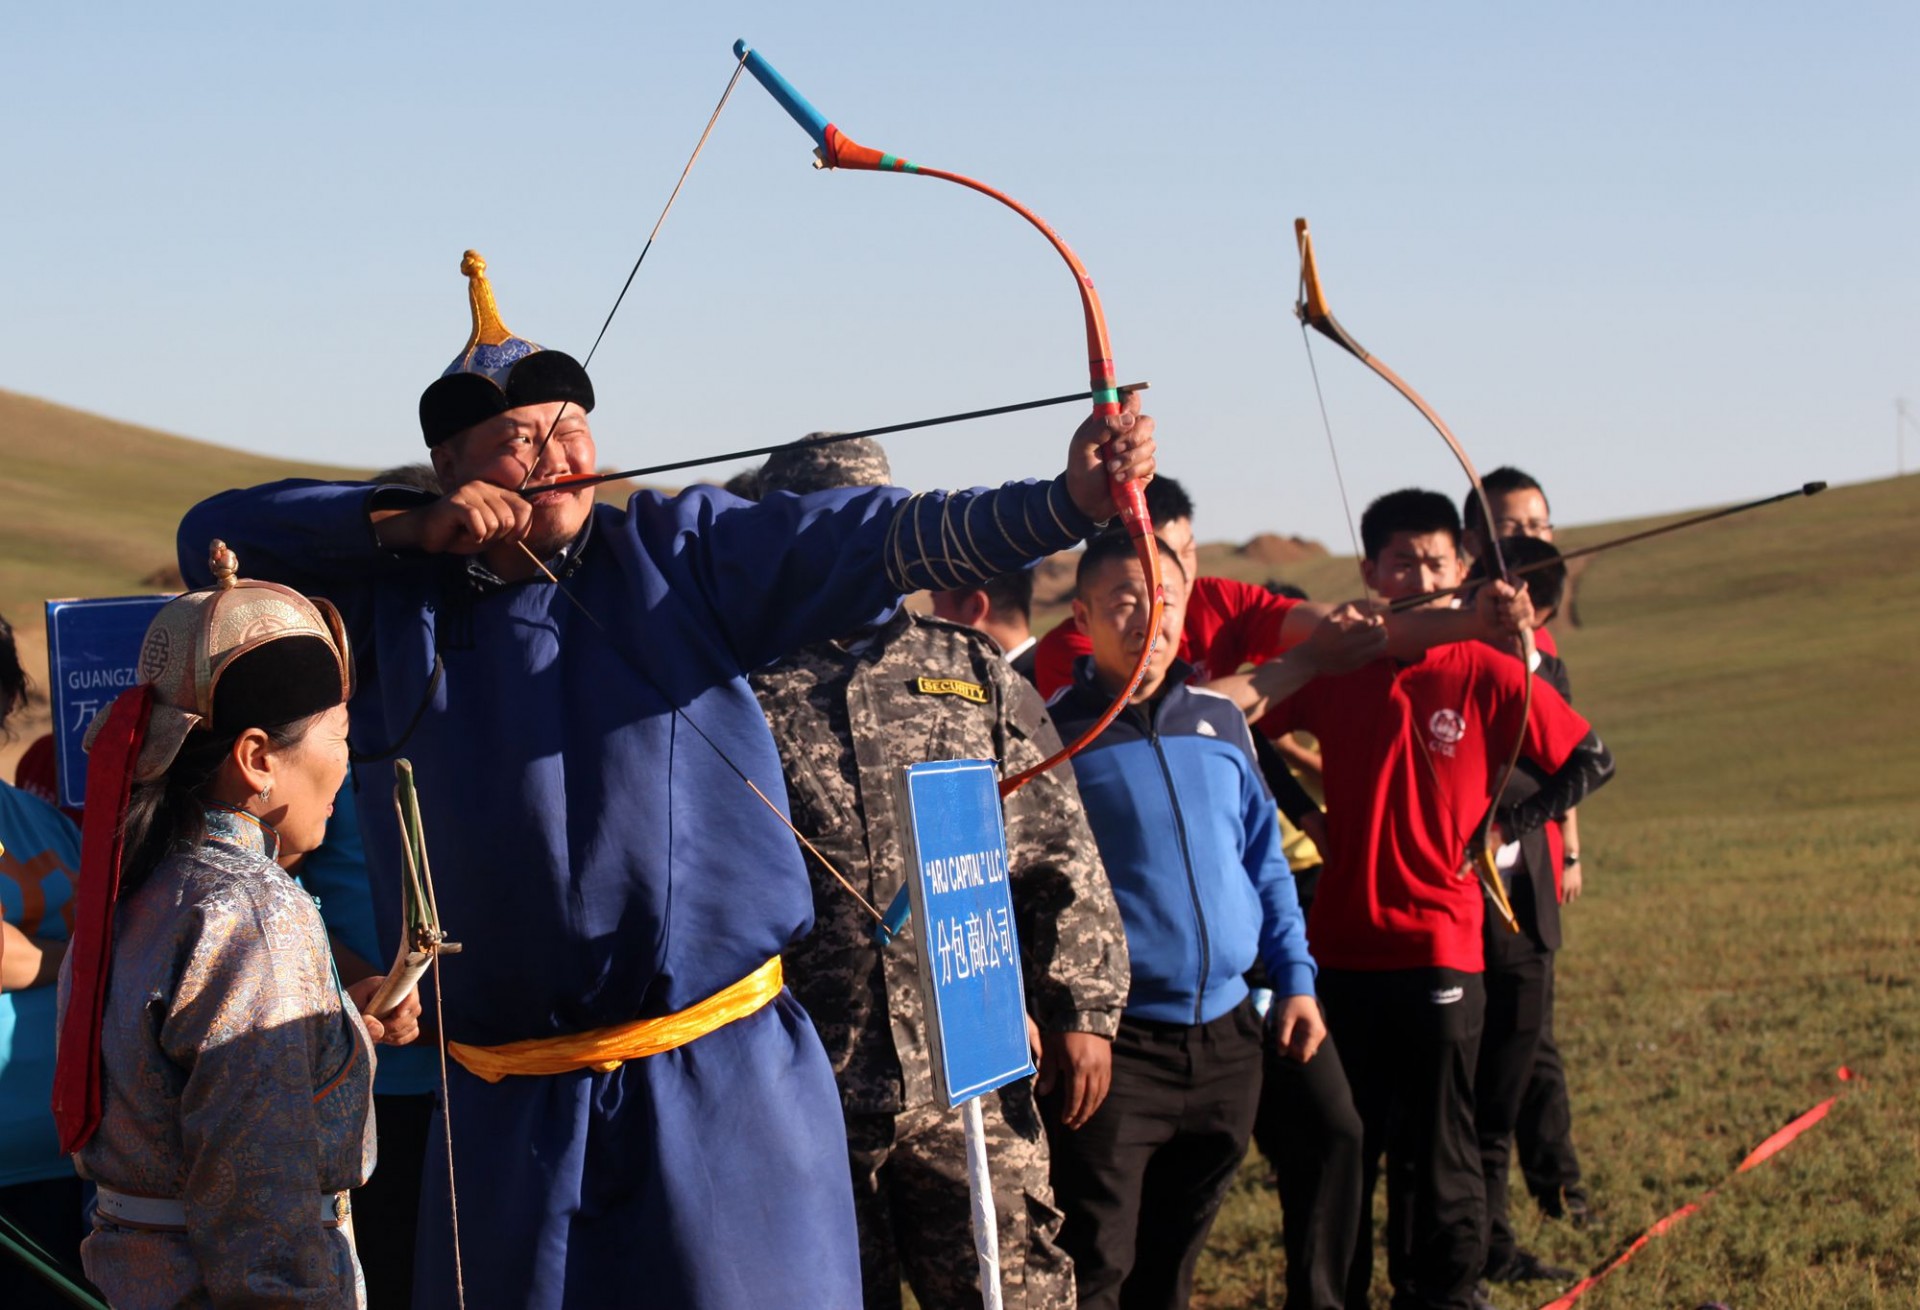 蒙古式射箭手法图片